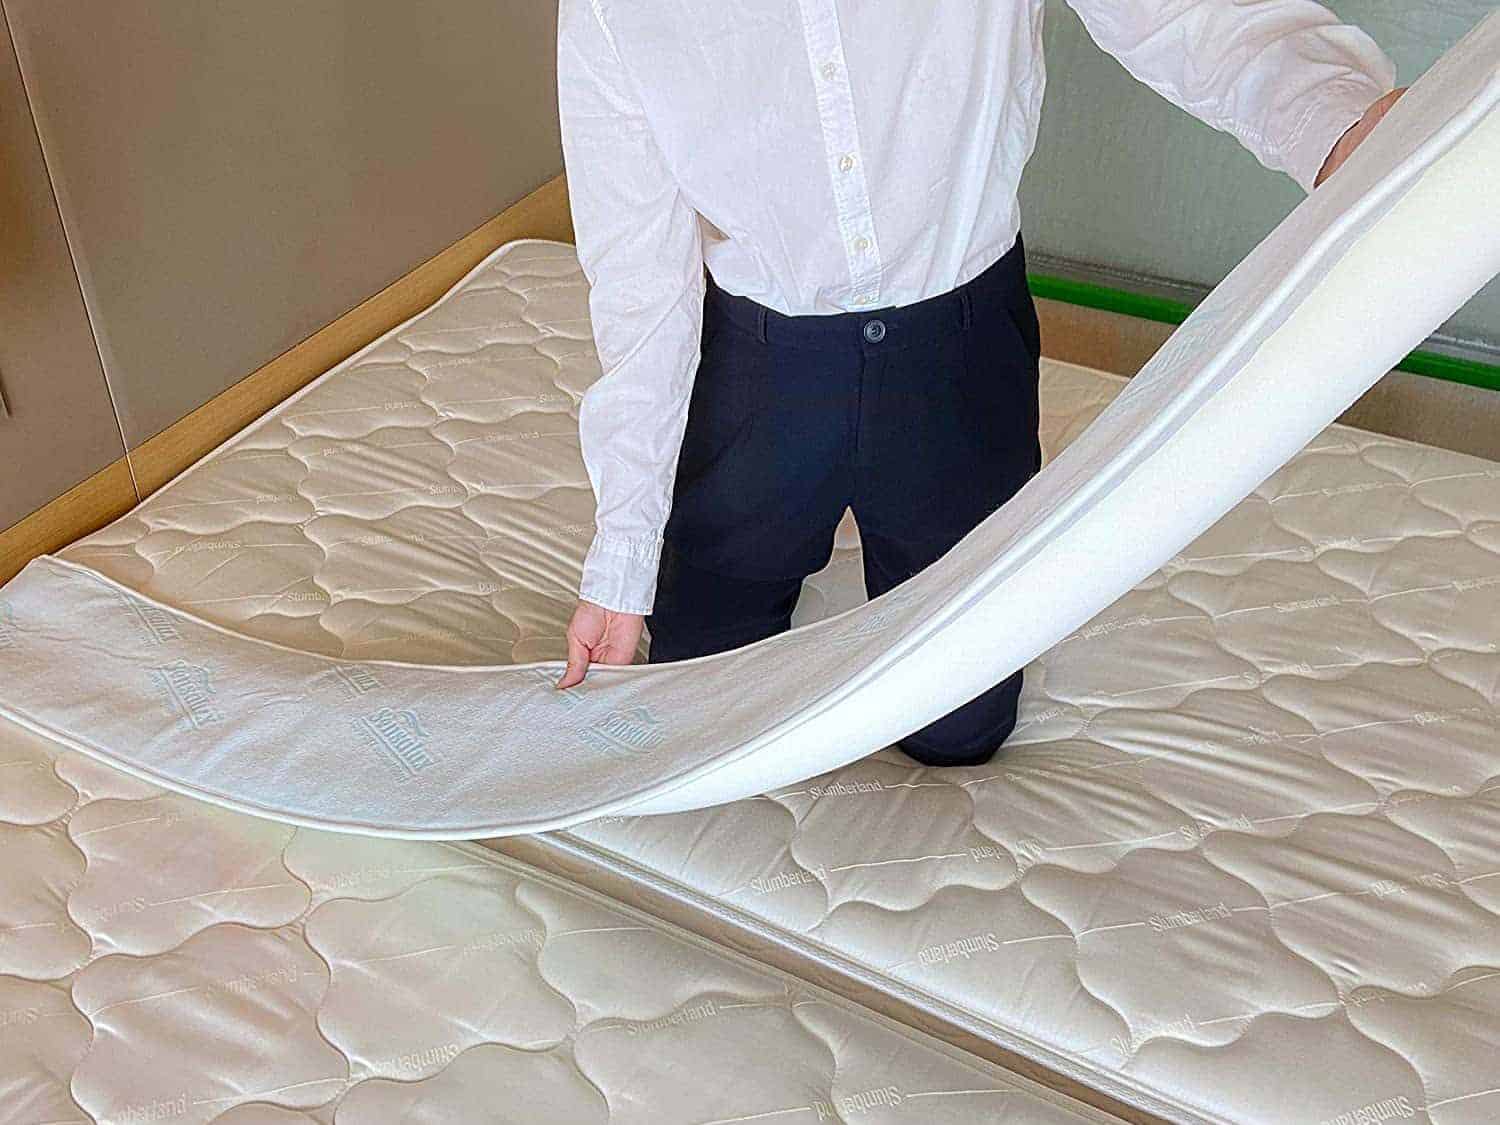 bed bridge mattress joiner